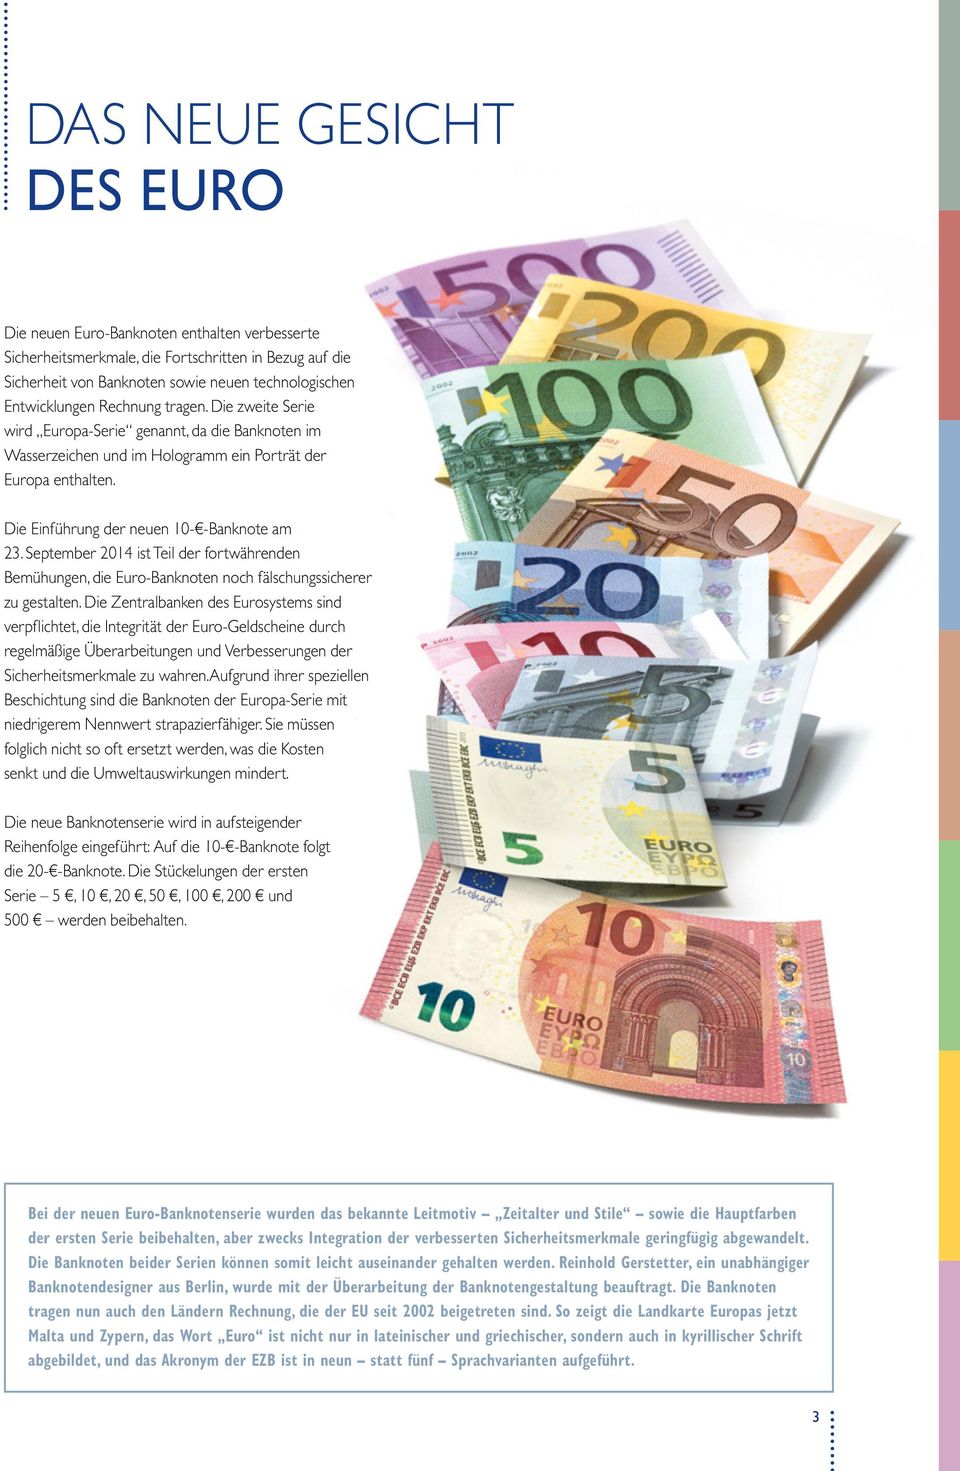 Sep tember 2014 ist Teil der fortwährenden Bemühungen, die Euro-Banknoten noch fälschungssicherer zu gestalten.